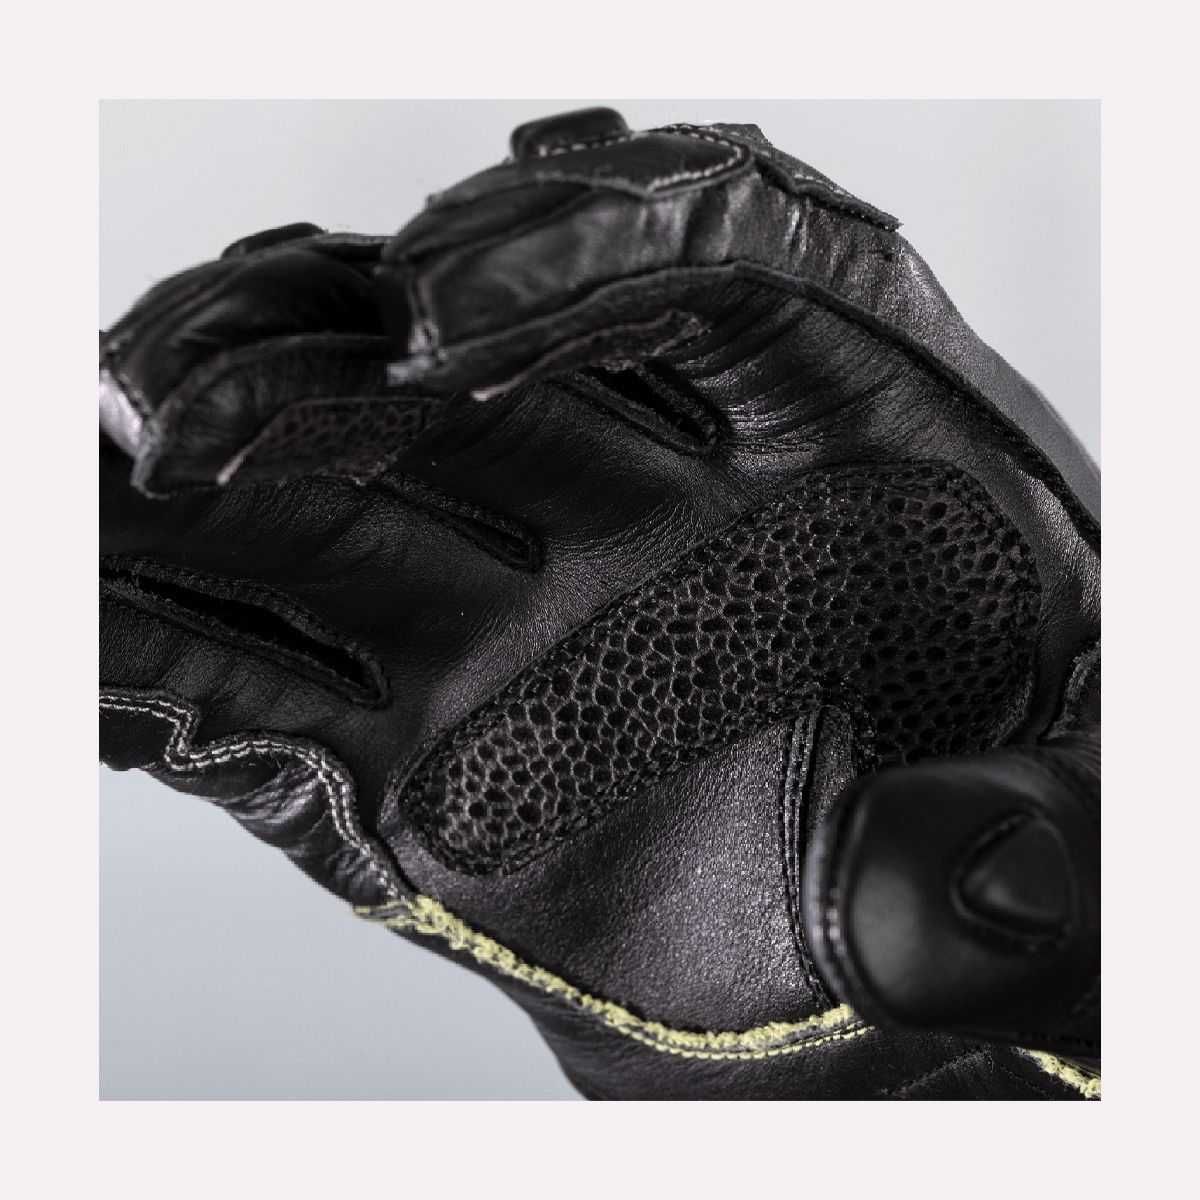 Ръкавици кожени мото RST Tractech EVO 4 черни XS/S/XXL